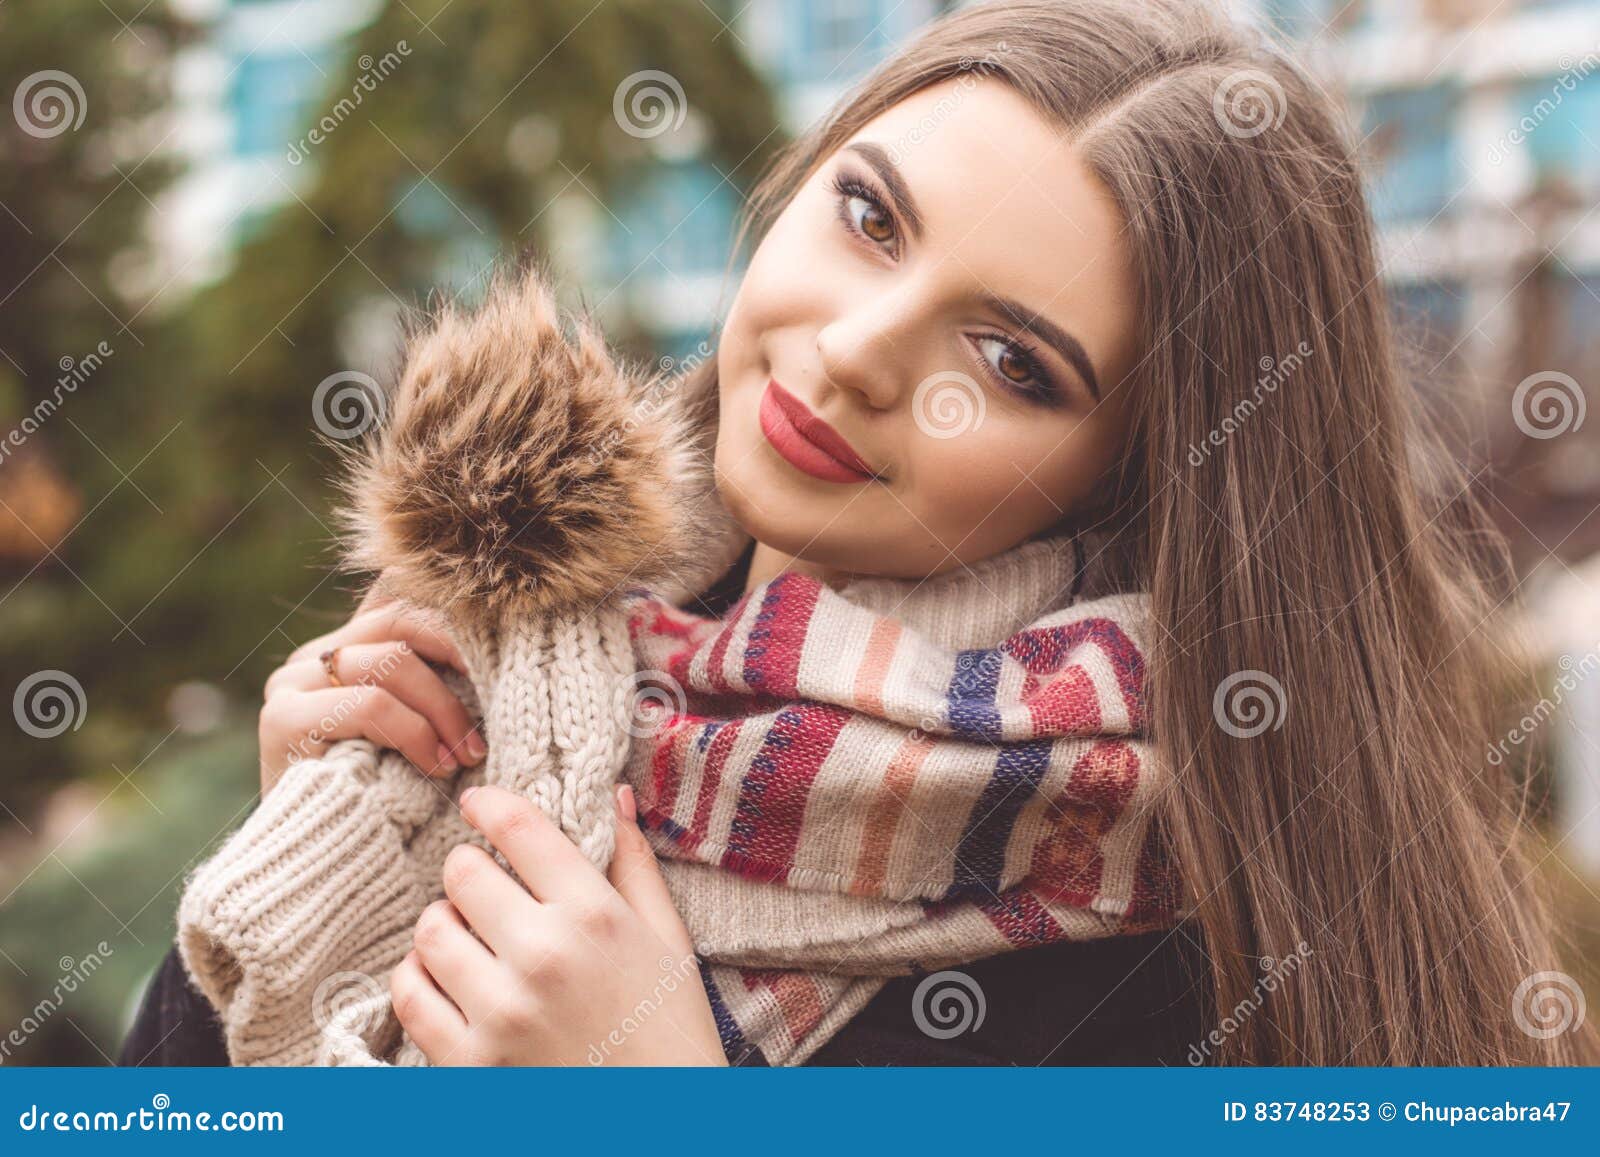 La muchacha bastante adolescente está llevando la ropa caliente del invierno. El retrato del primer de la muchacha sonriente hermosa del adolescente con la piel perfecta está llevando el sombrero caliente y la bufanda del invierno que presentan al aire libre Concepto de la moda de la caída y del invierno